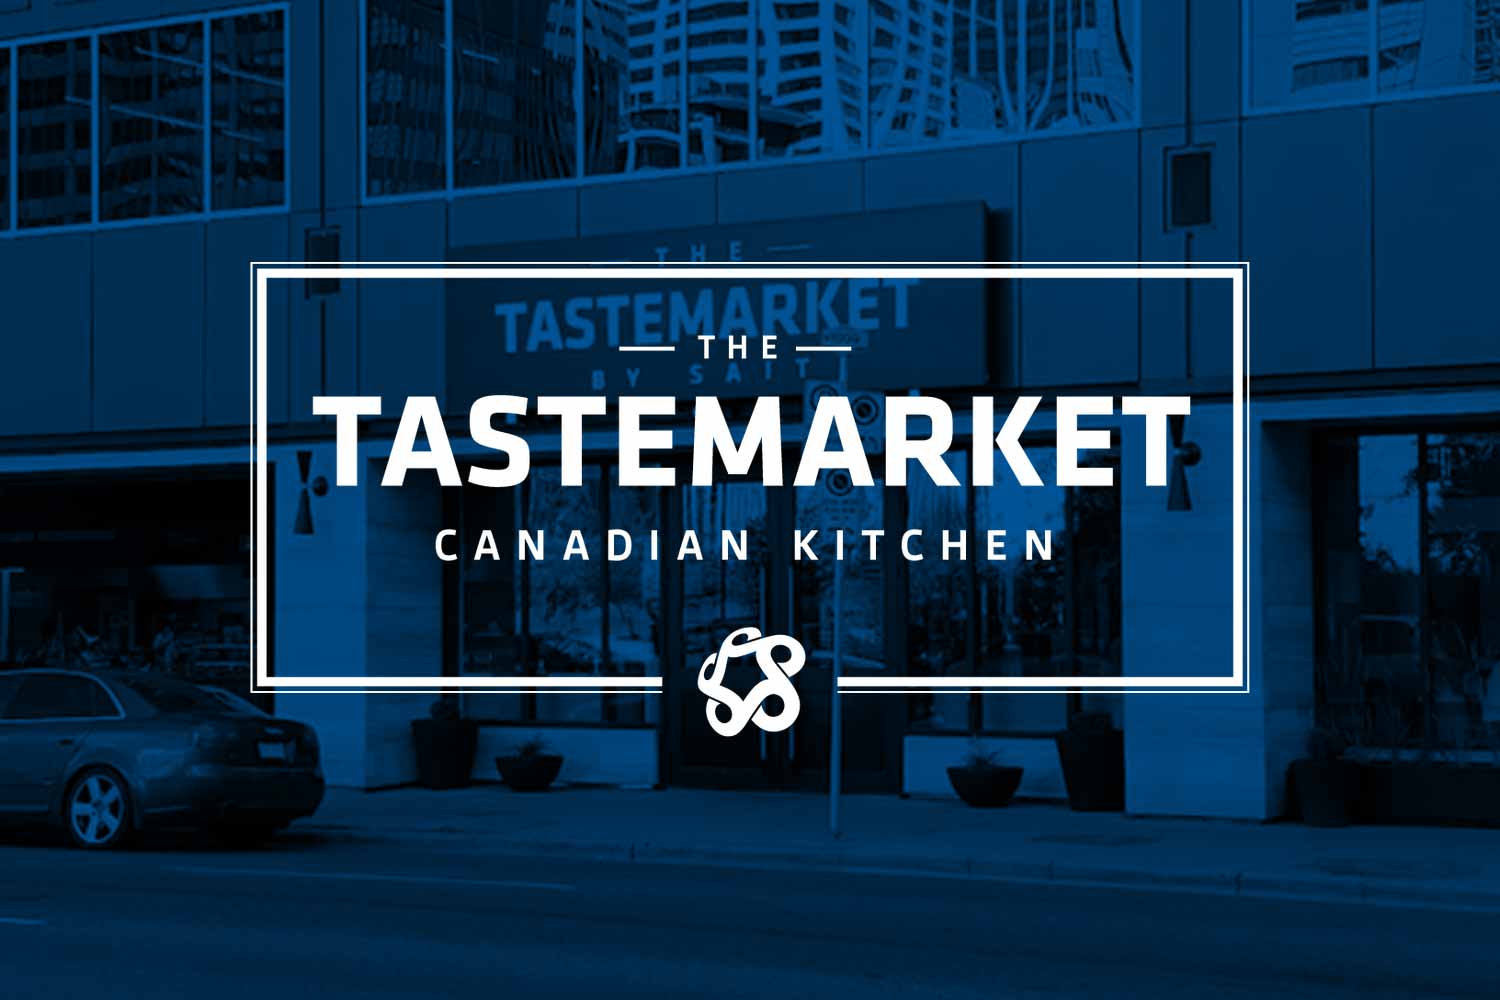 The Tastemarket Canadian Kitchen